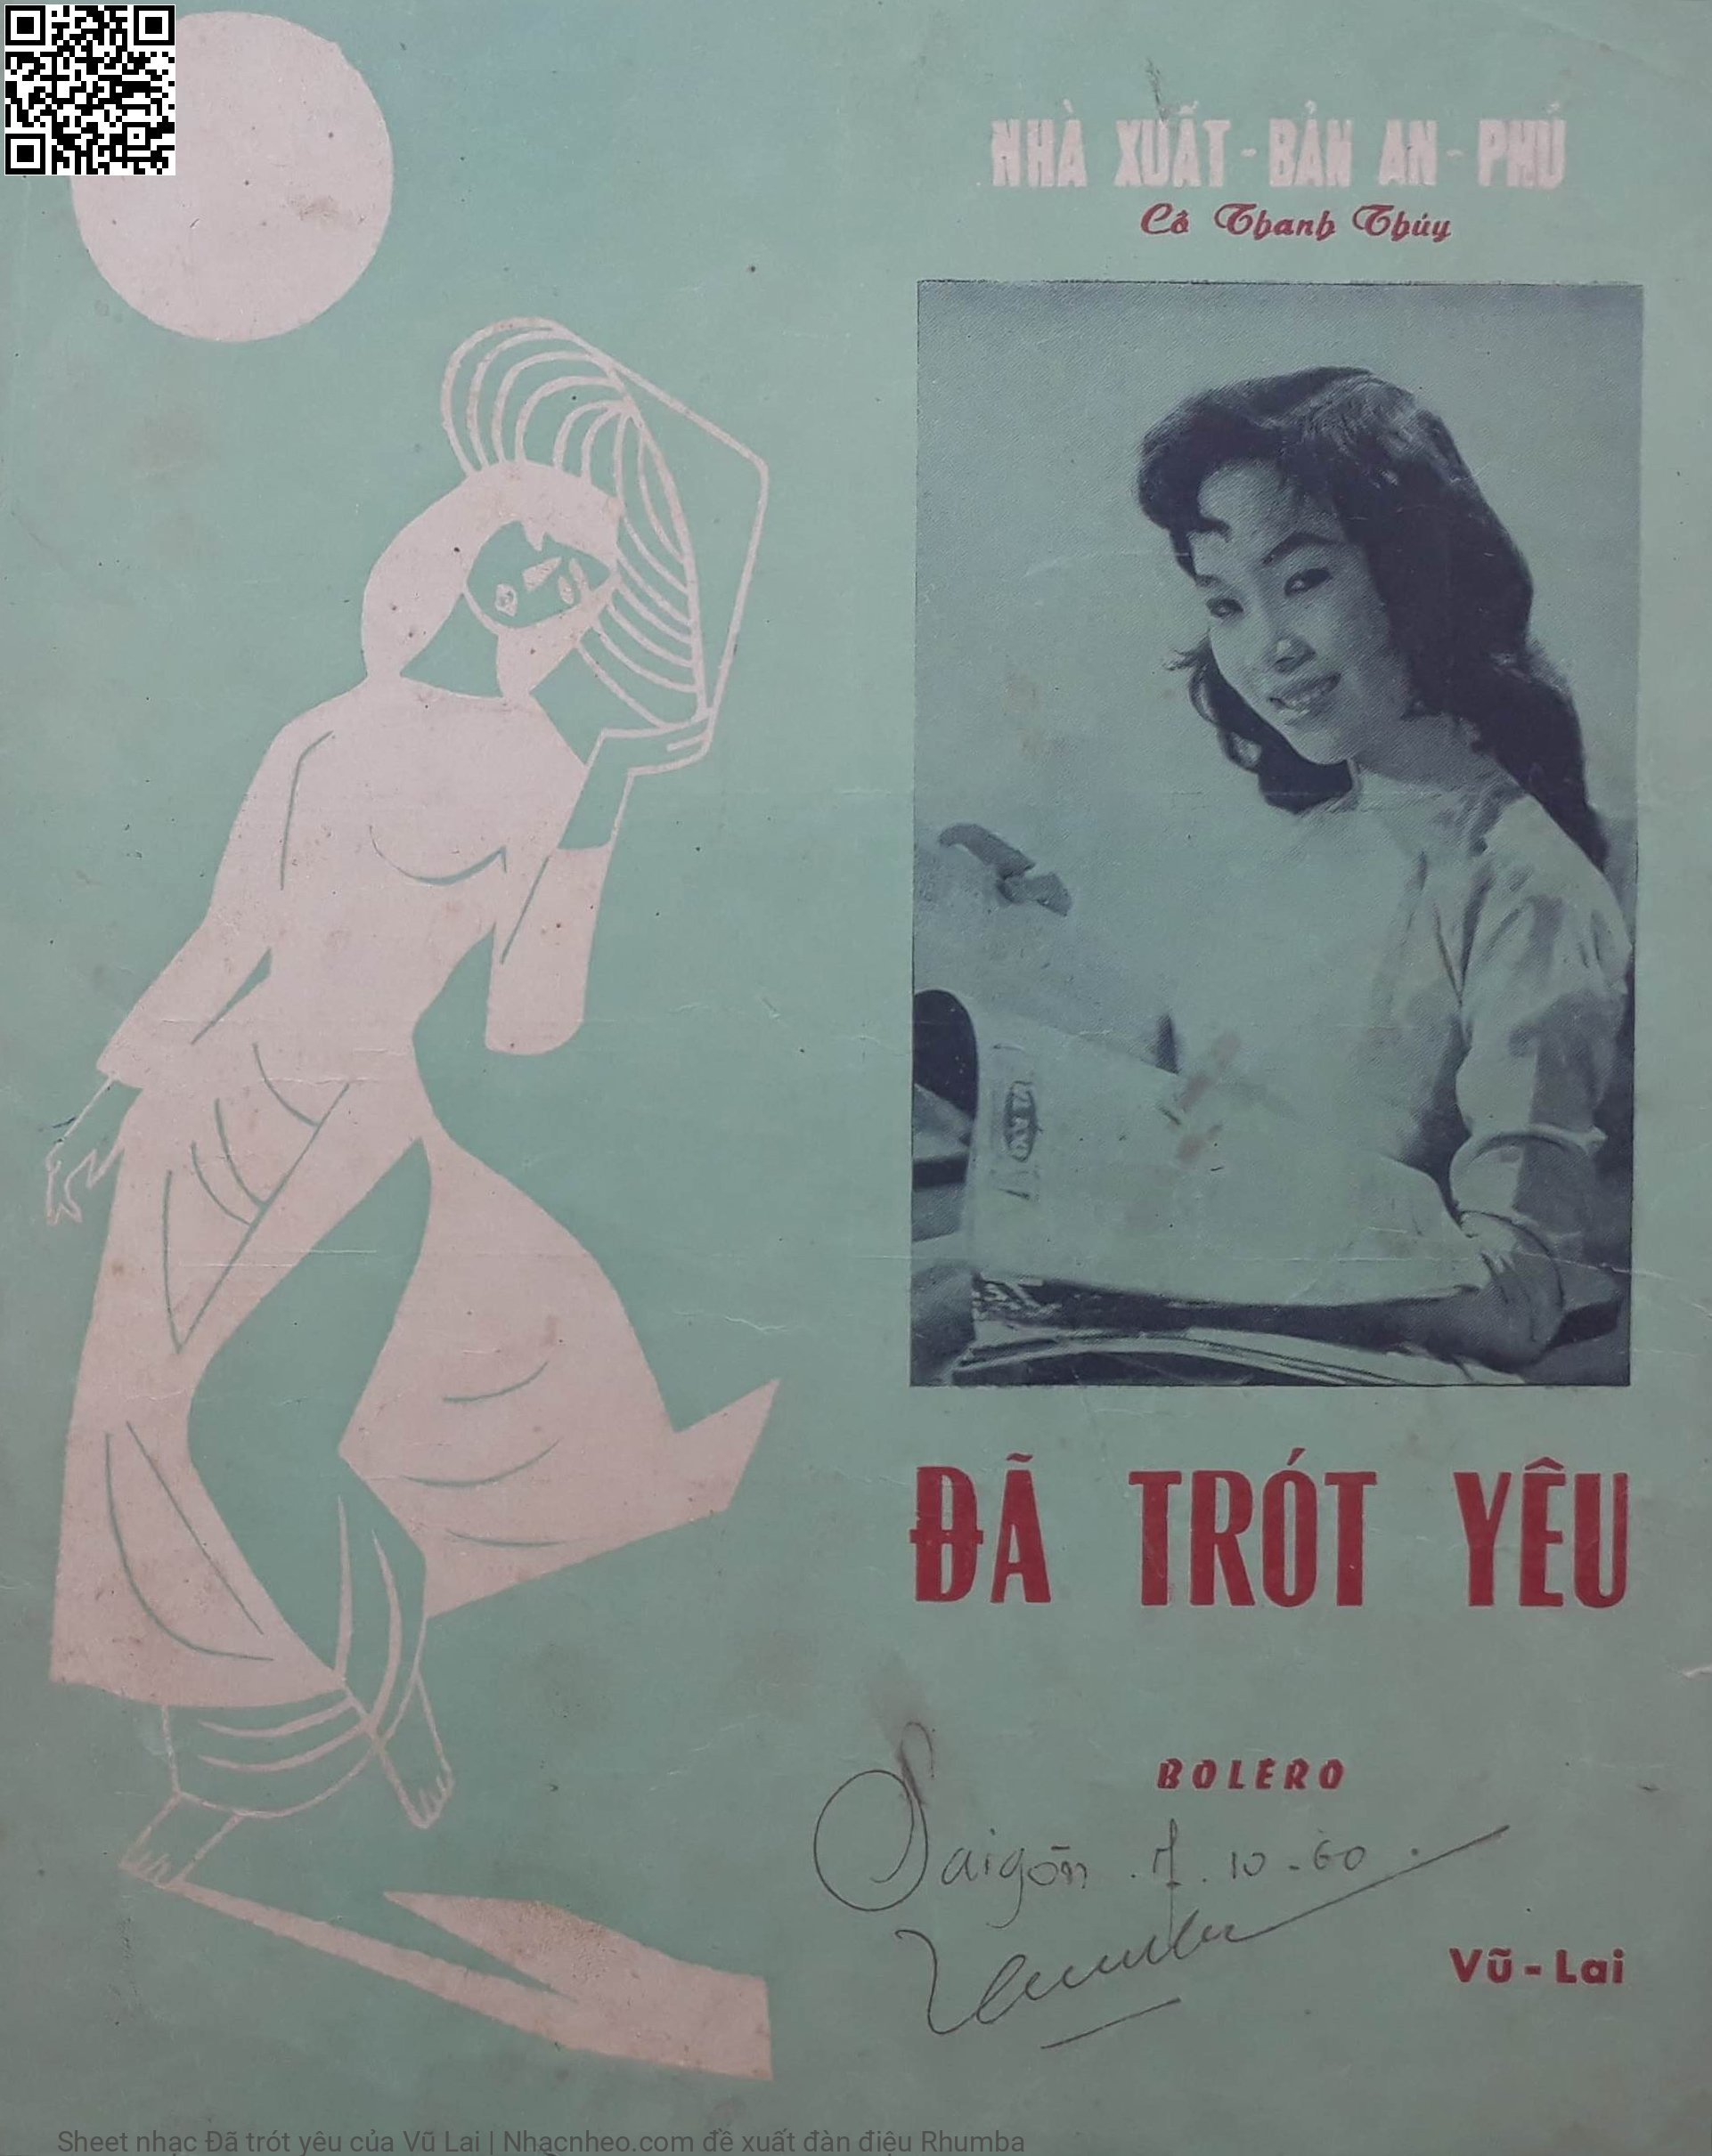 Sheet nhạc Đã trót yêu - Vũ Lai